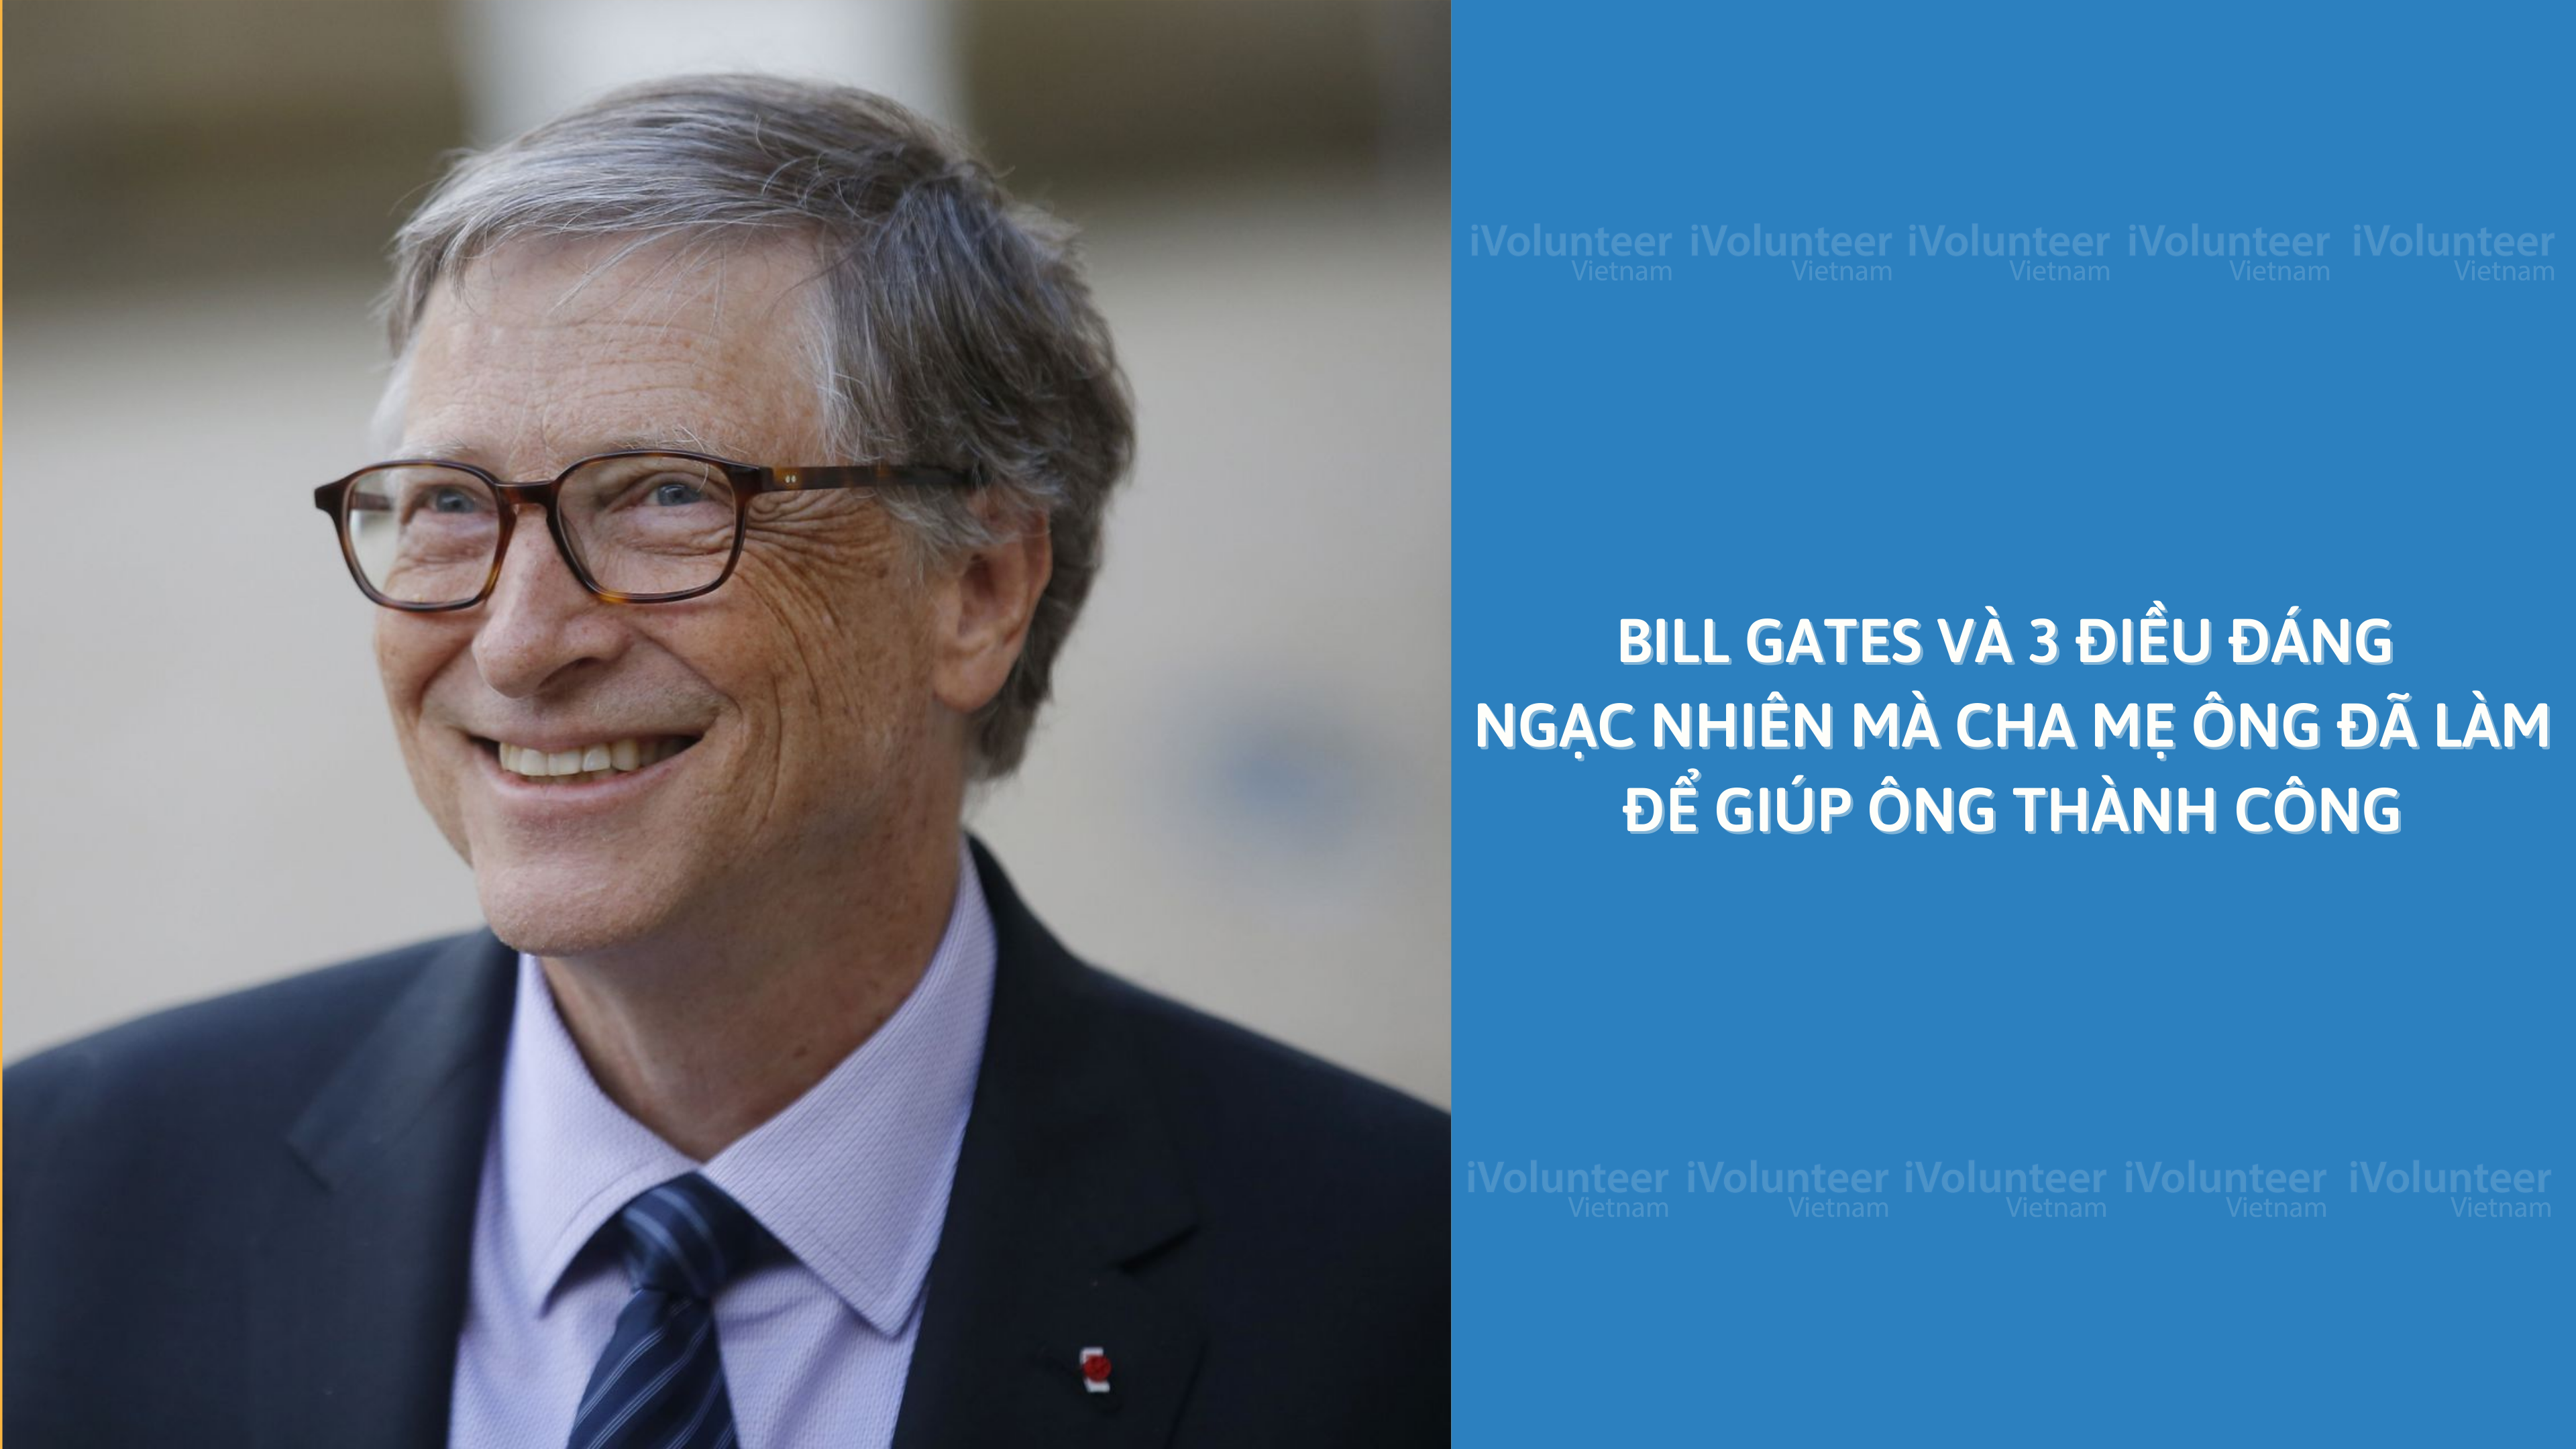 Bill Gates Và 3 Điều Đáng Ngạc Nhiên Mà Cha Mẹ Ông Đã Làm Để Giúp Ông Thành Công